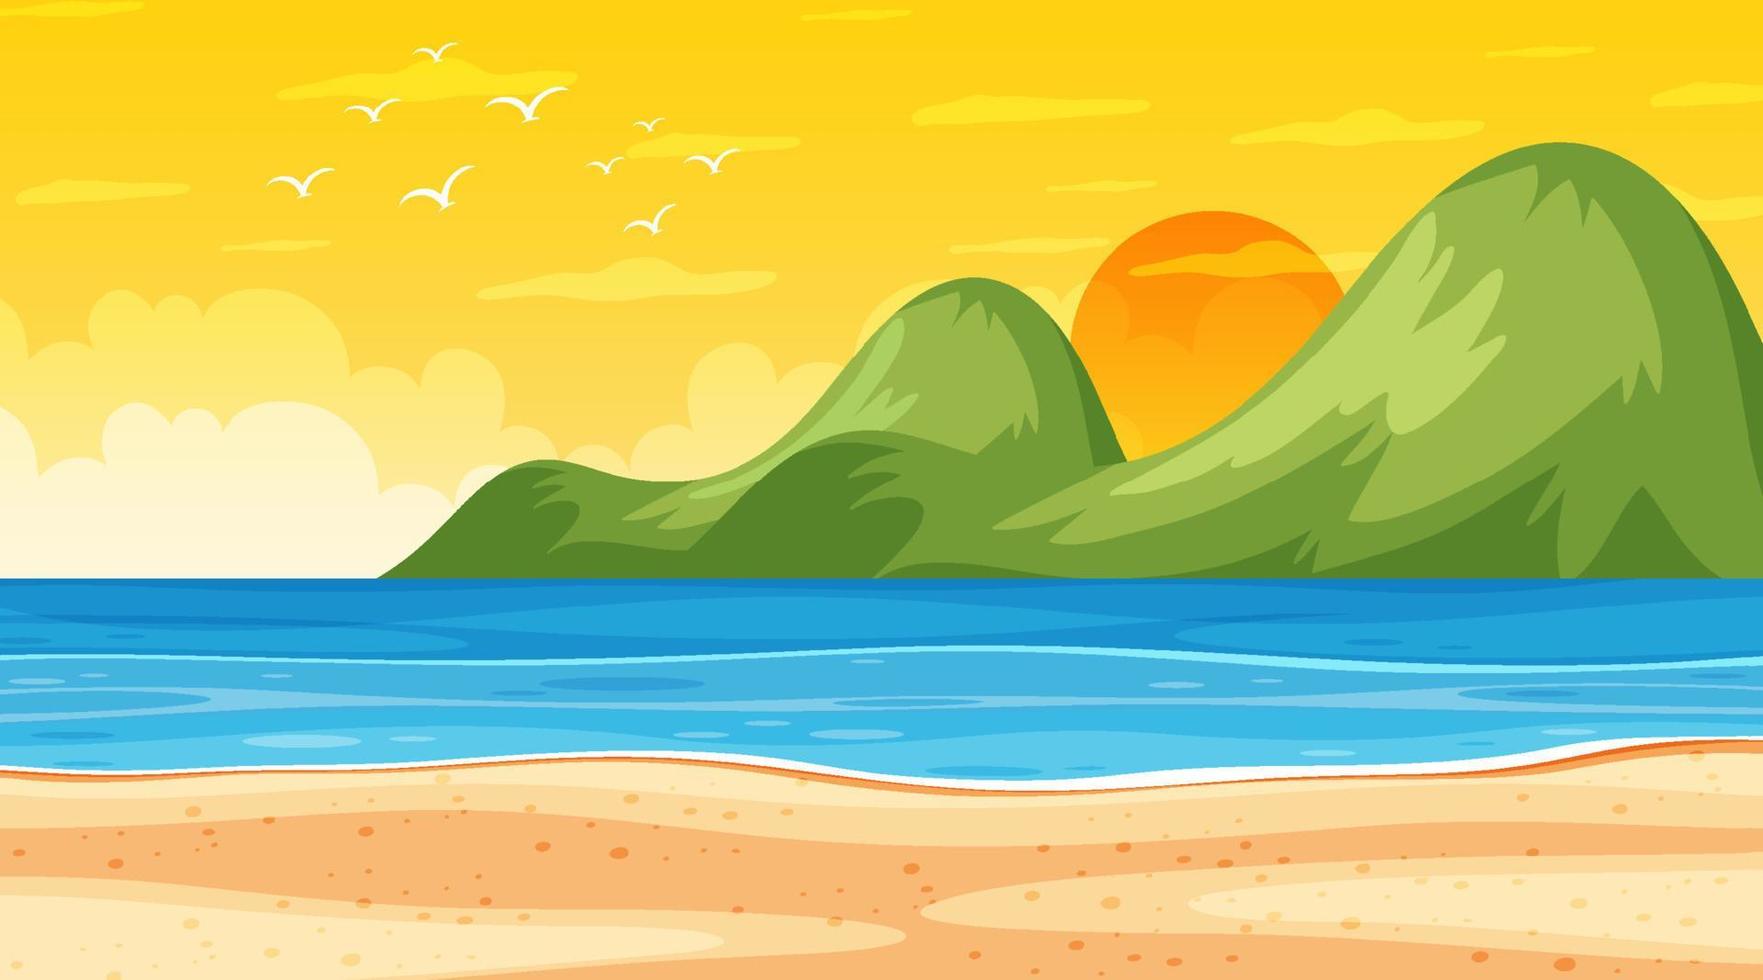 paisagem de praia em cena de pôr do sol com ondas do mar vetor